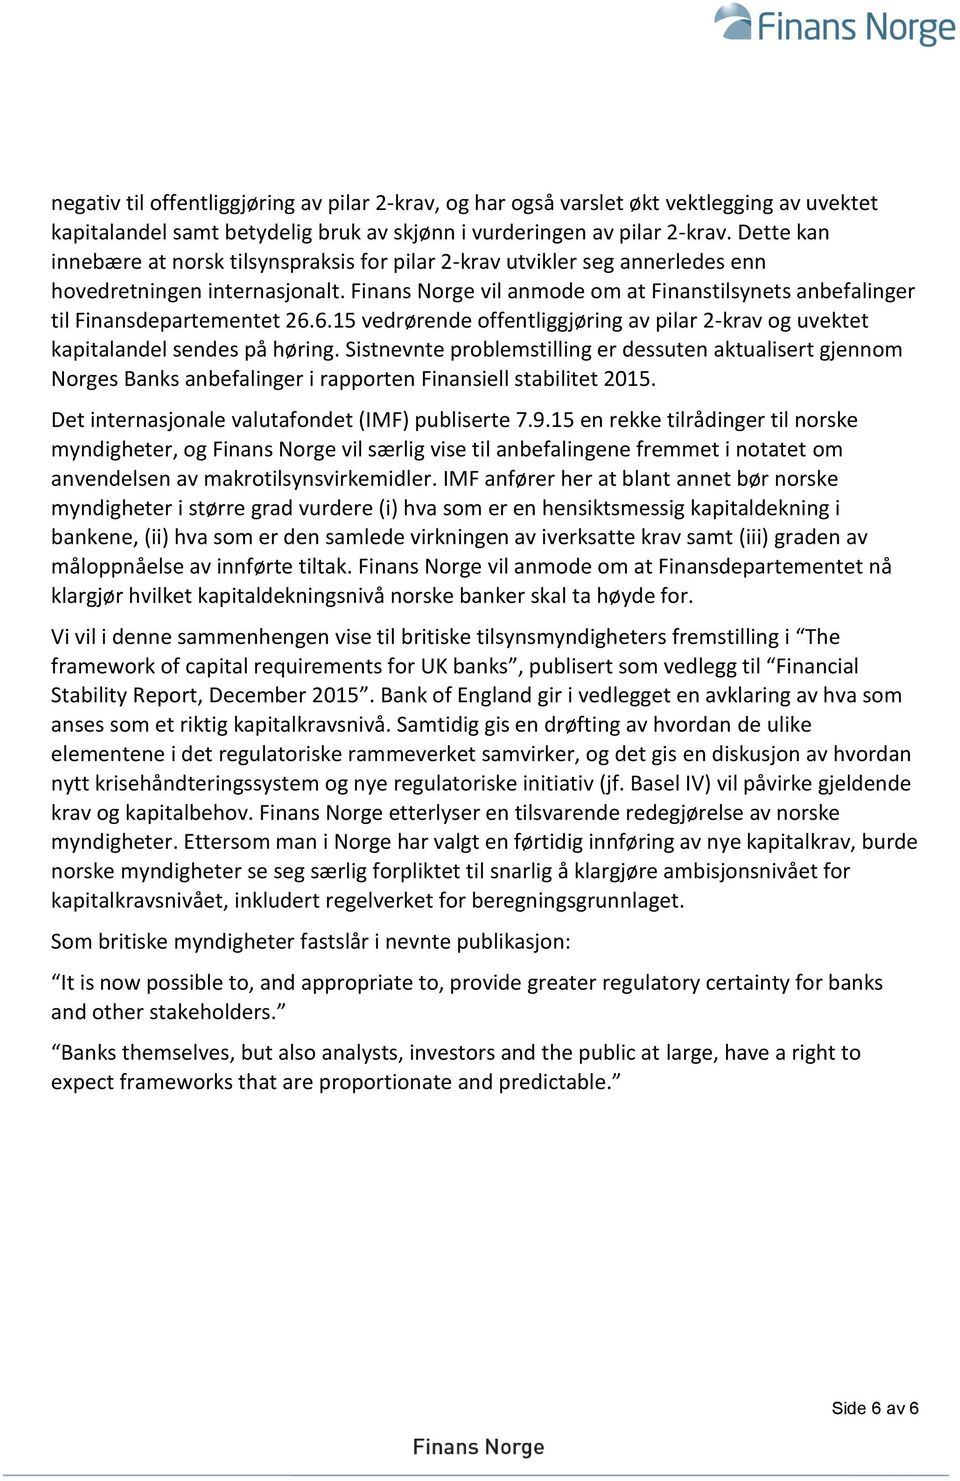 Finans Norge vil anmode om at Finanstilsynets anbefalinger til Finansdepartementet 26.6.15 vedrørende offentliggjøring av pilar 2-krav og uvektet kapitalandel sendes på høring.